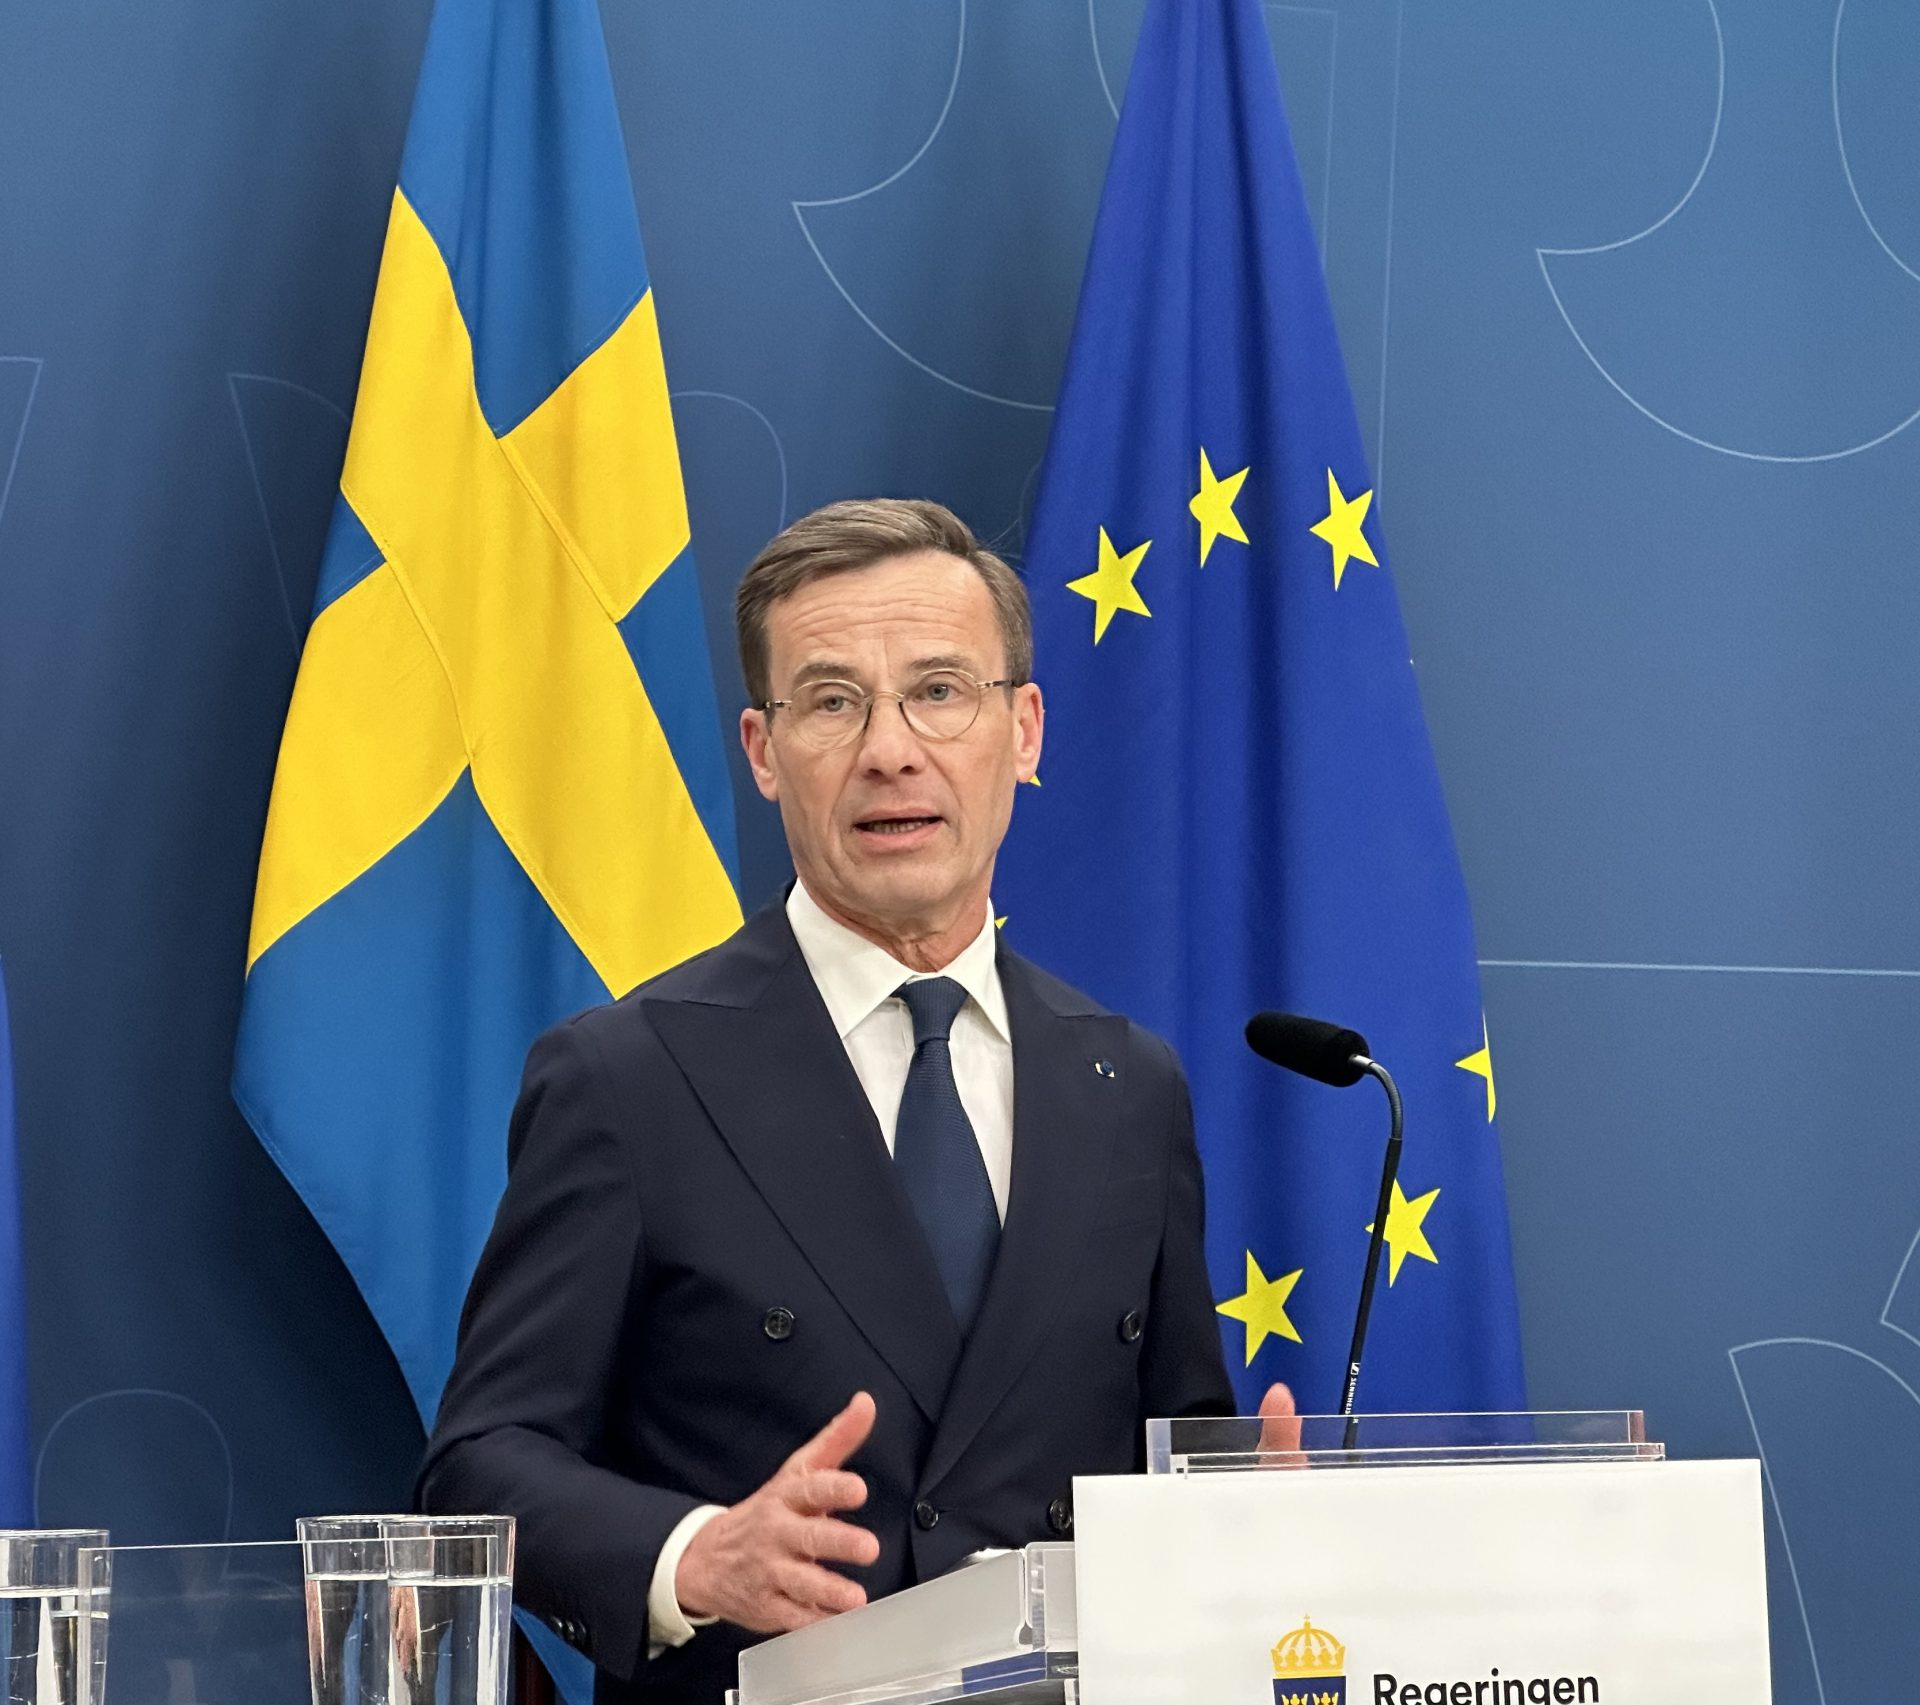 Le Premier ministre suédois prêt à déployer l'arme nucléaire